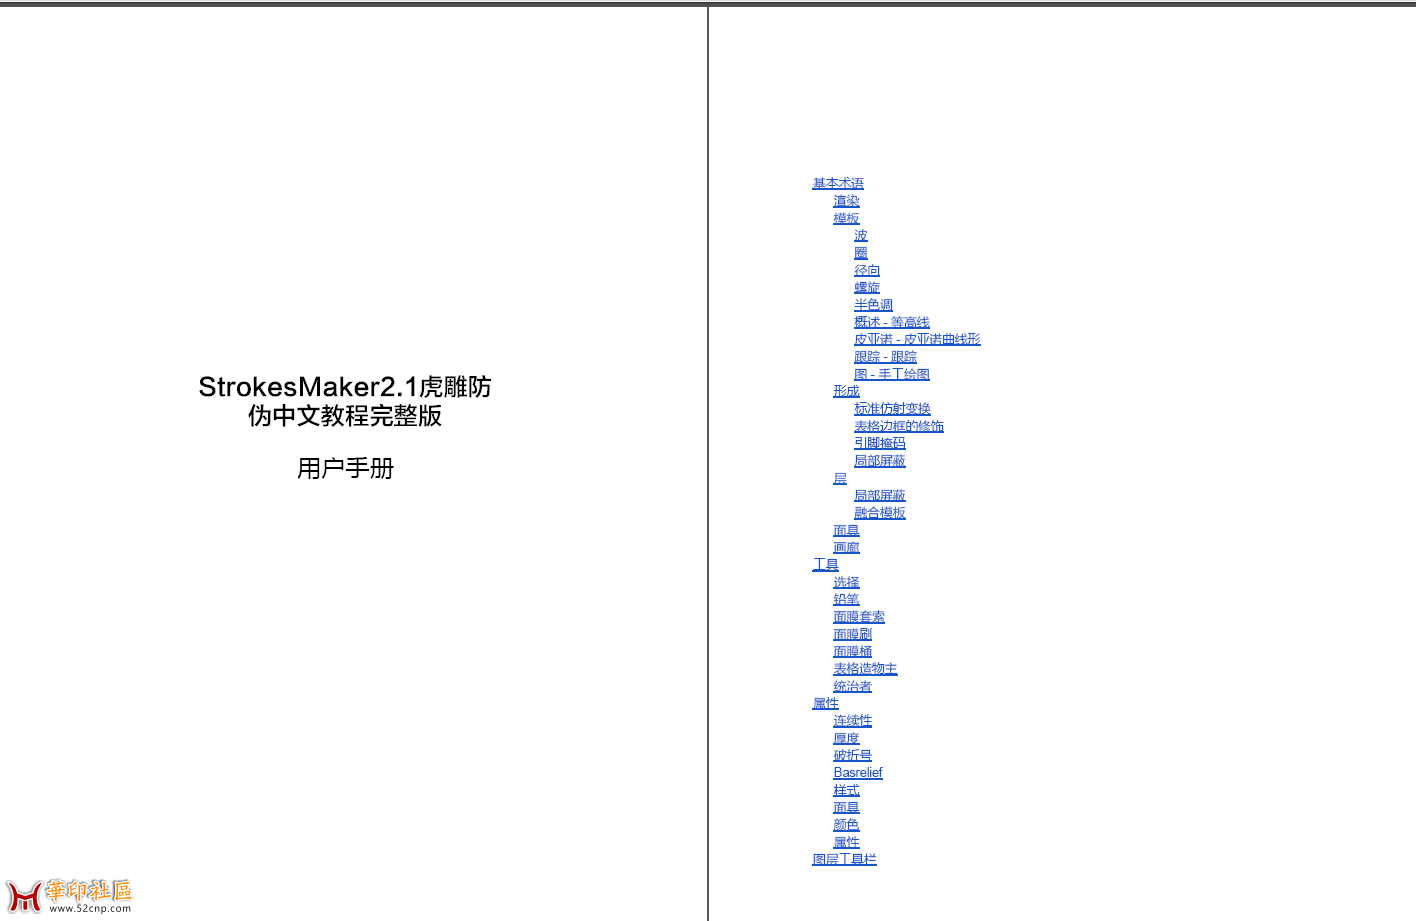 虎雕防伪软件2.1，中文教程完整版{tag}(2)